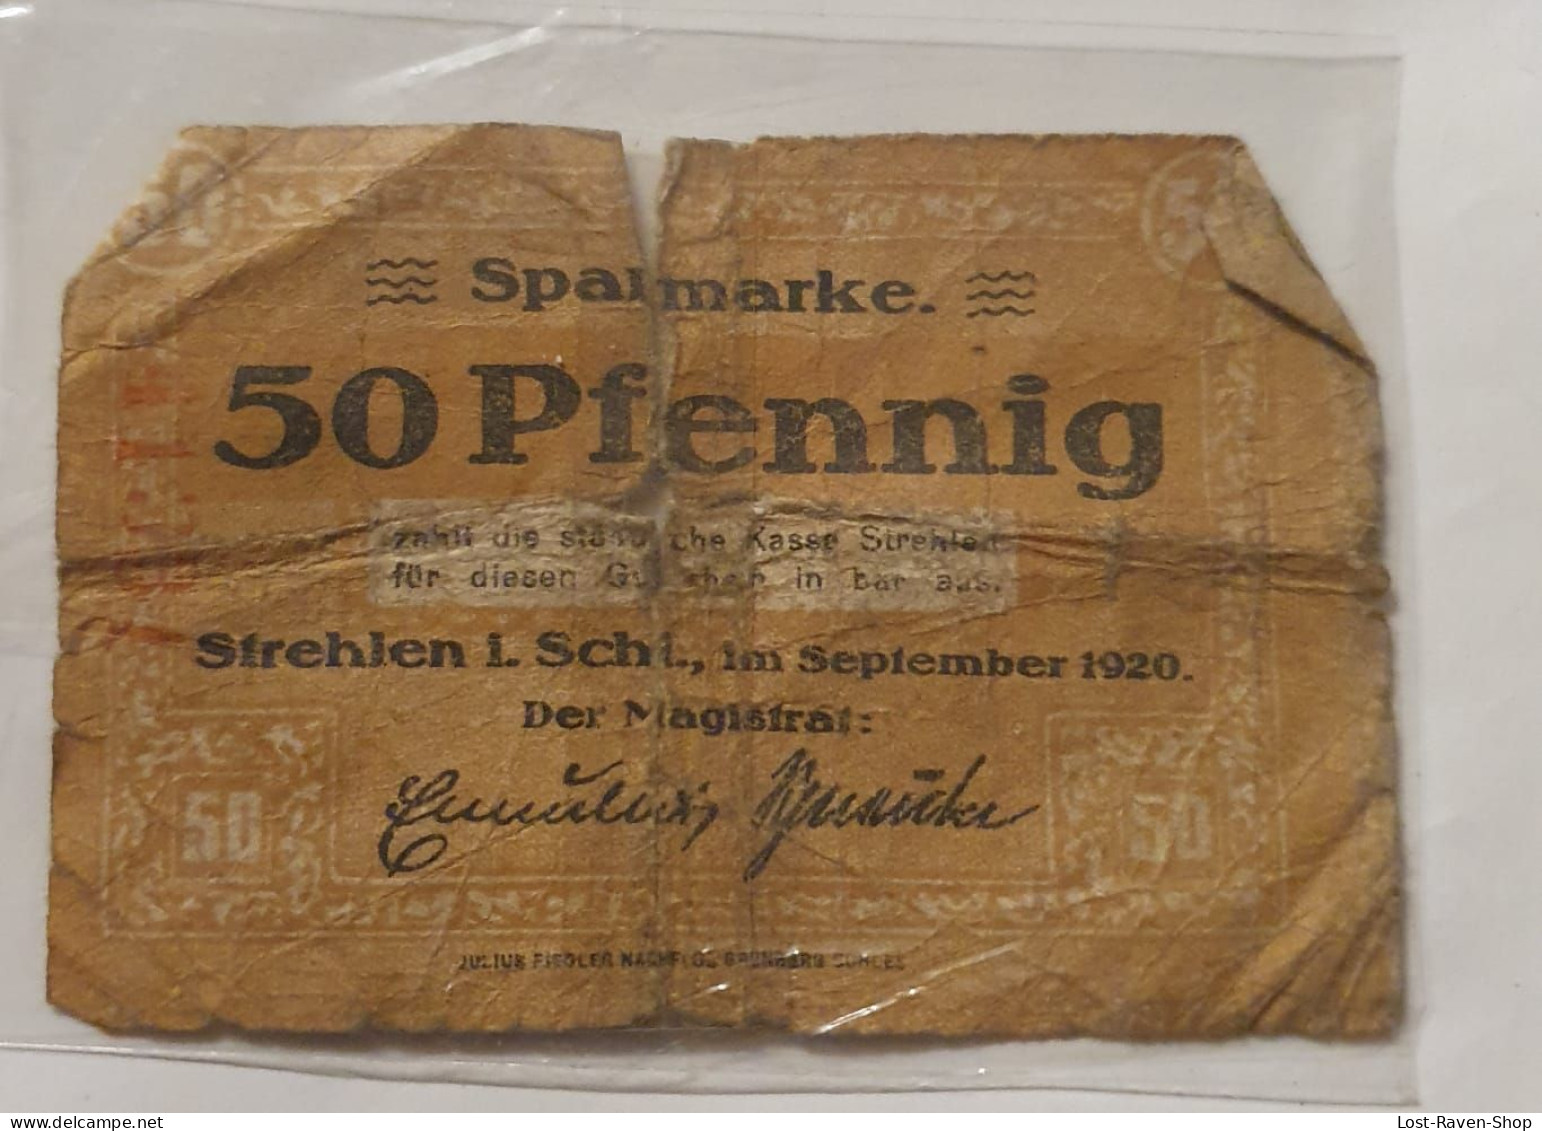 50 Pfennig Sparmarke Strehlen - Deutschland - Unclassified